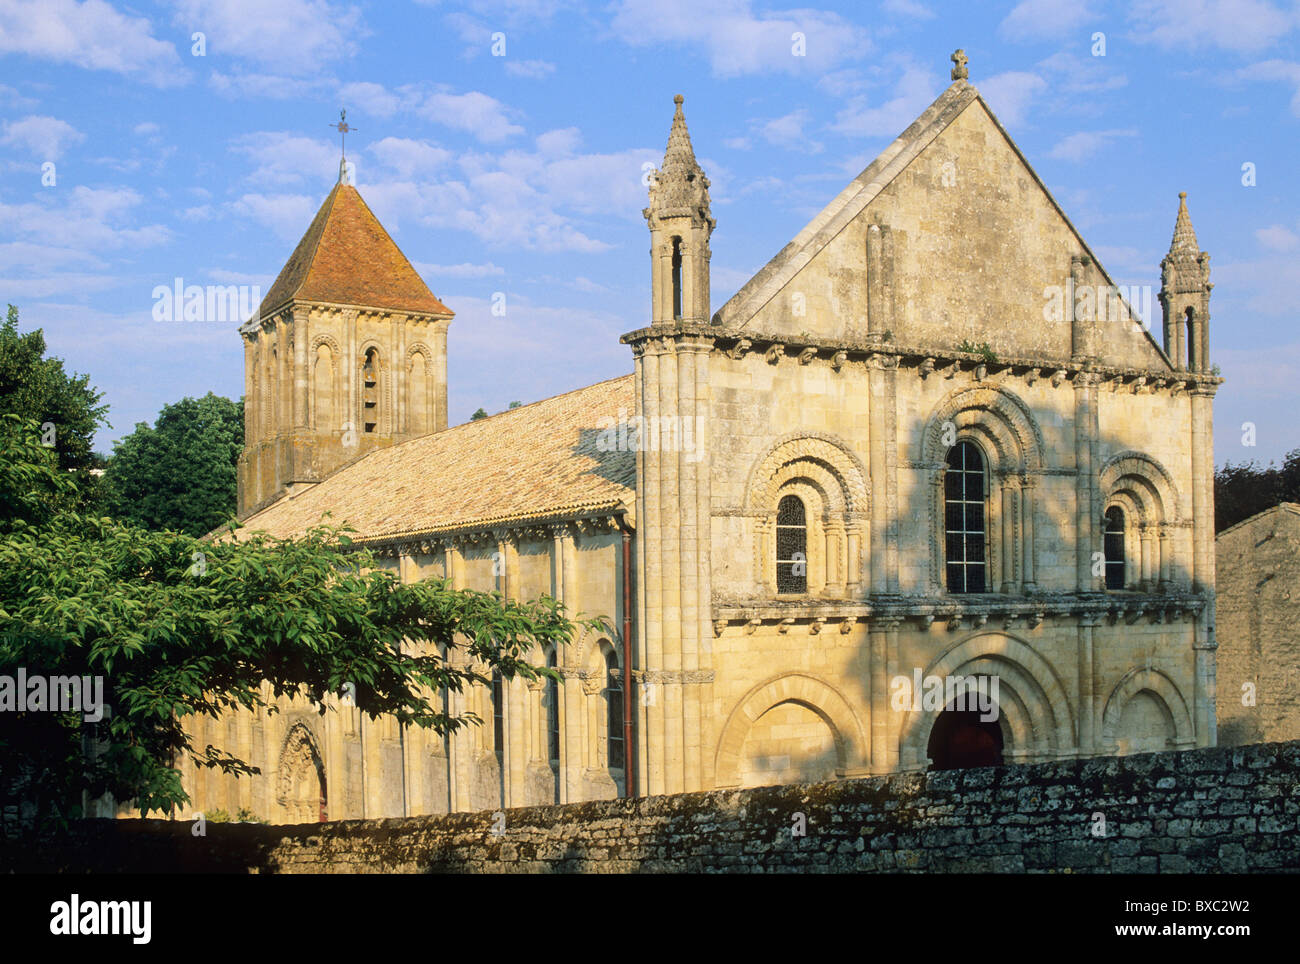 St Hilaire church, Melle, Deux-Sevres, France Stock Photo